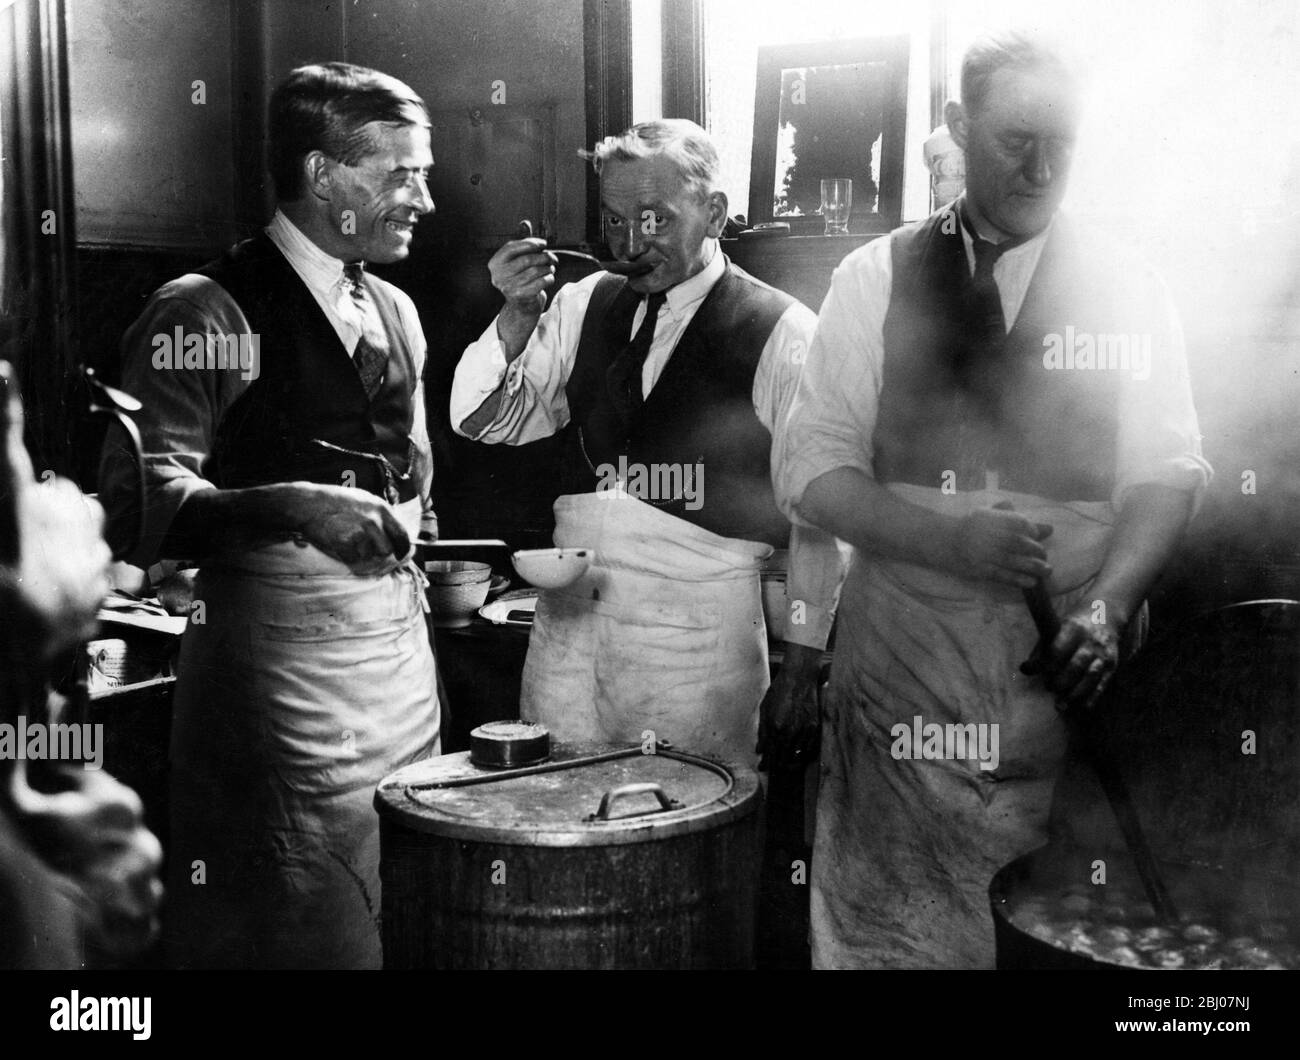 Pauvreté dans le nord de l'Angleterre - cuisines pour les grévistes de coton - installées dans diverses villes du district de coton du Lancashire pour aider les grévistes et leurs familles. - photo : test de la soupe au Fulledge Club, Burnley - 23 septembre 1932 Banque D'Images